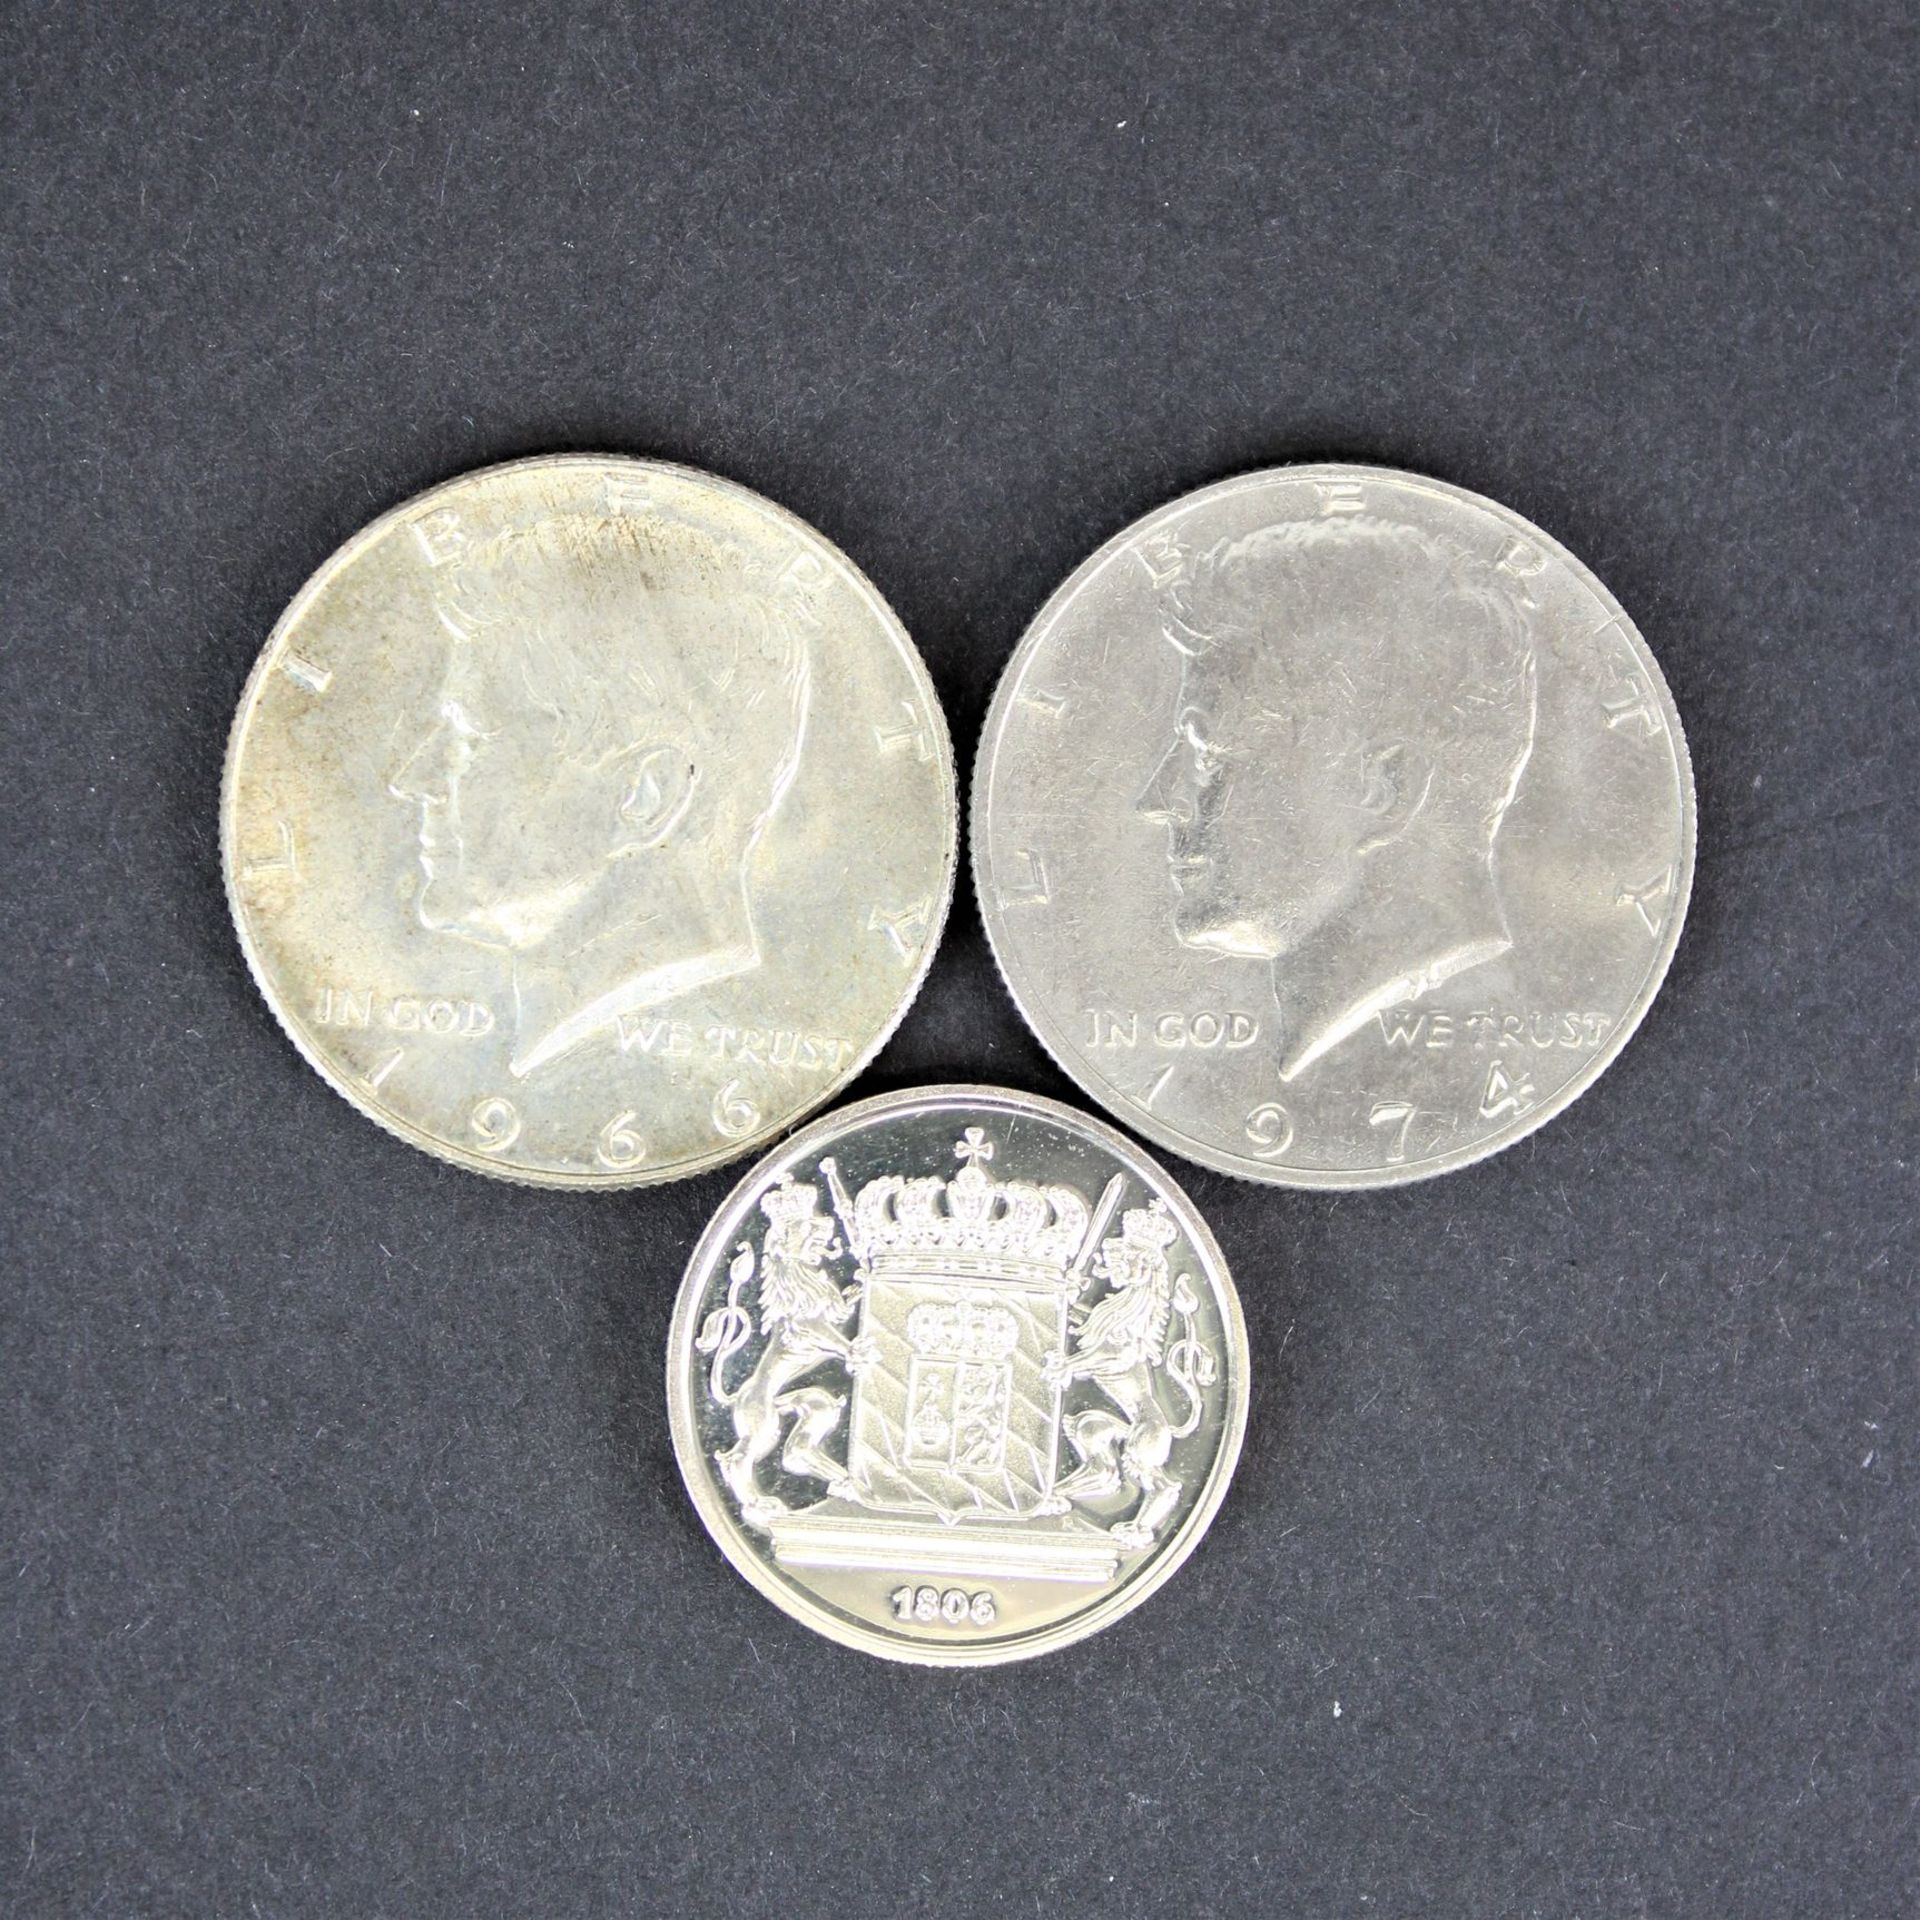 3 Silbermünzen " DIe Geschichte des bayerischen wappens " plus 2 half coin dollars